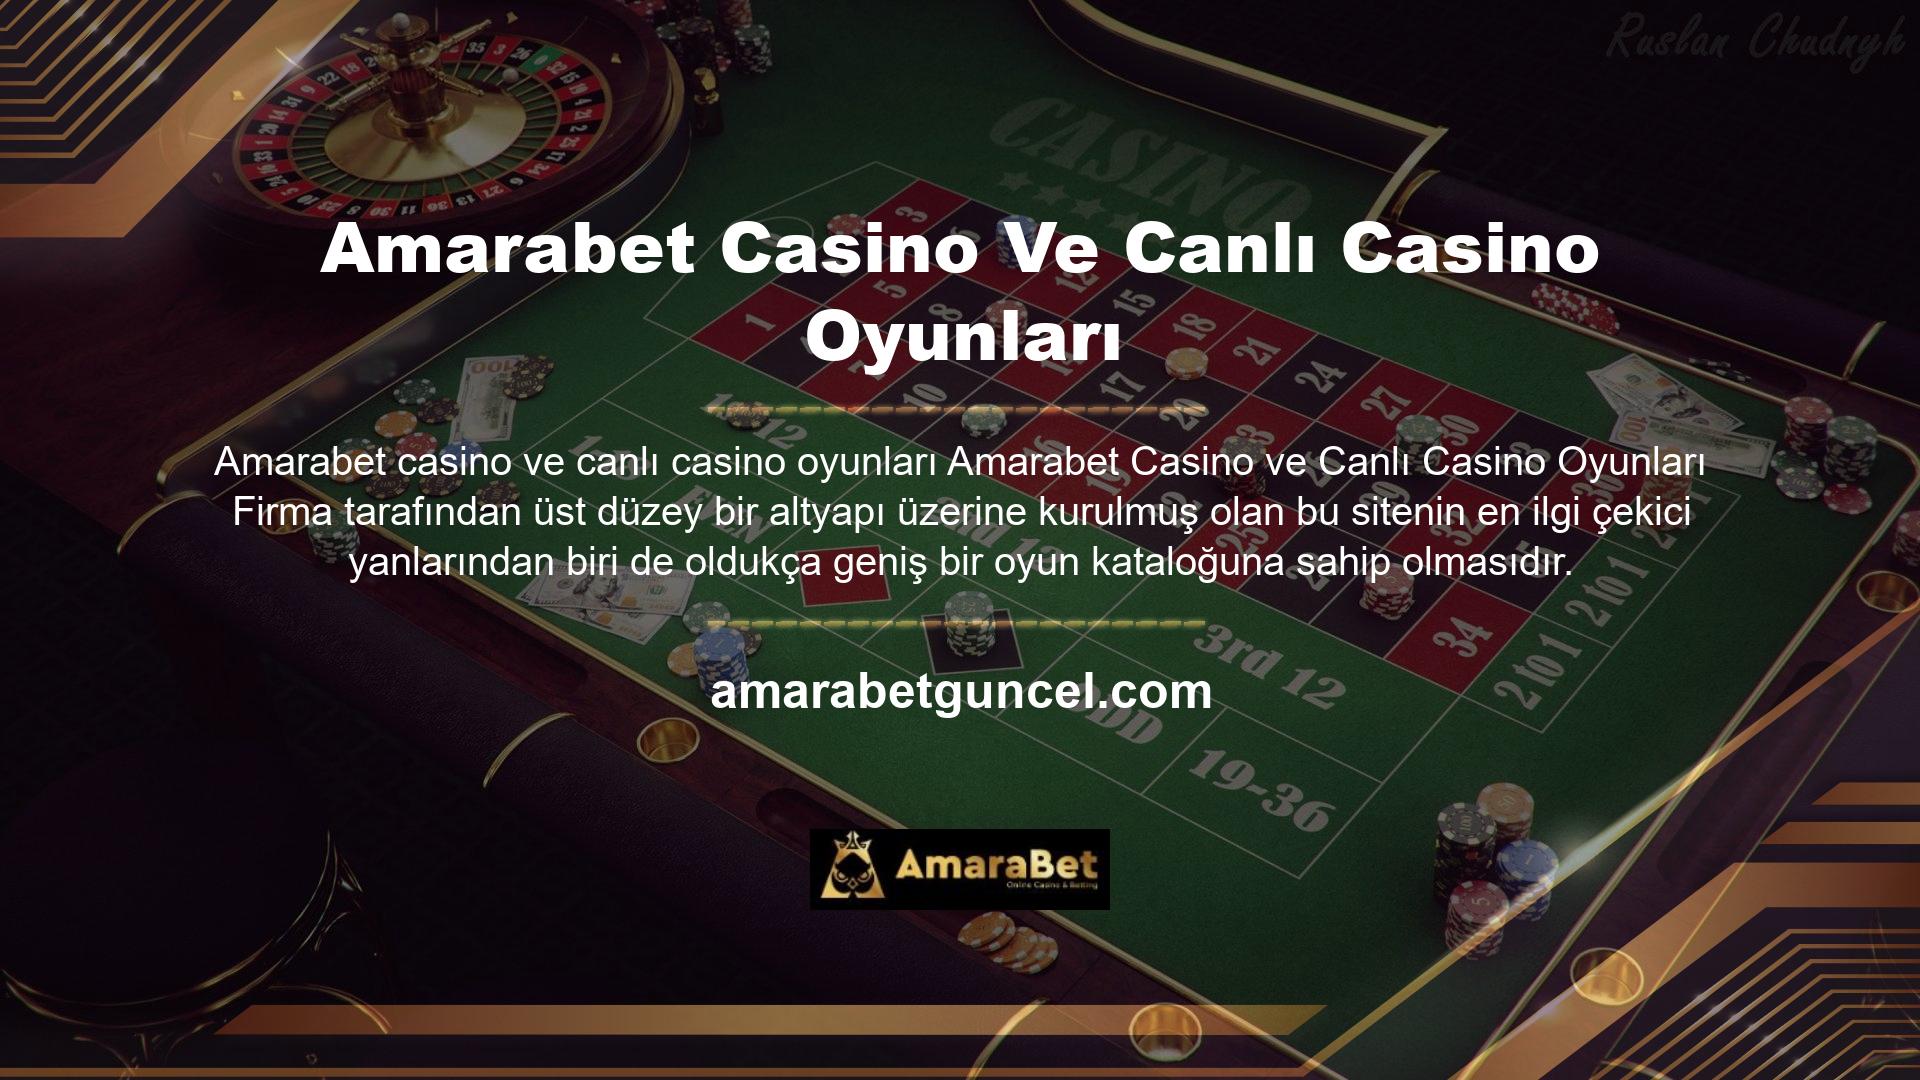 Amarabet bunu casino oyunları alanında da sunmaktadır ve oldukça geniş bir oyun portföyüne sahiptir